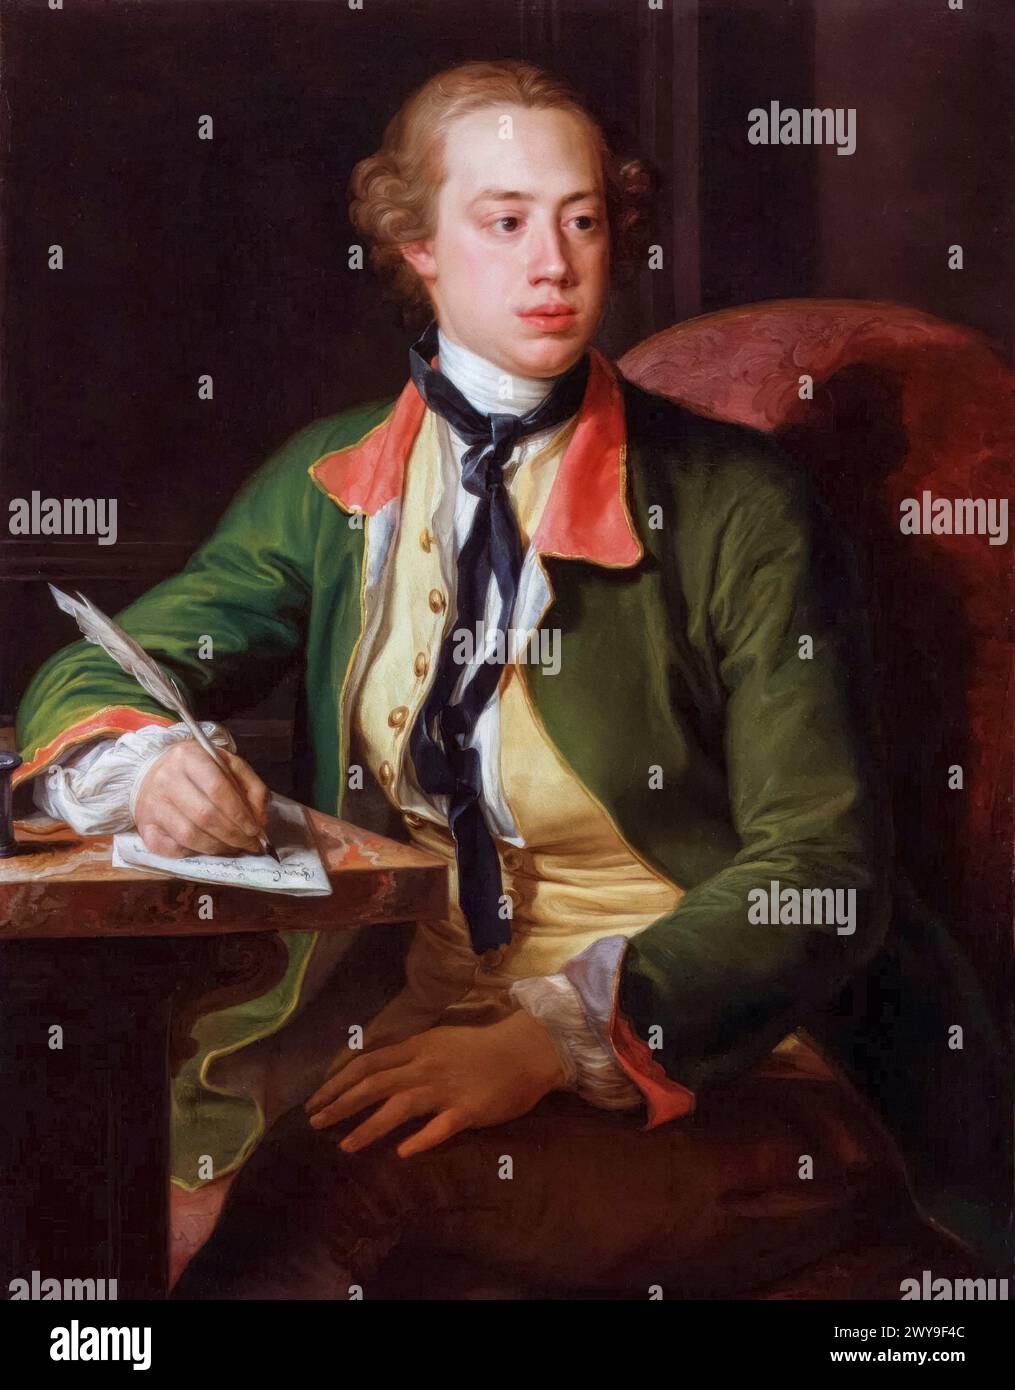 Frederick North, 2e comte de Guilford (1732-1792), alias Lord North, premier ministre de Grande-Bretagne 1770-1782, portrait peint à l'huile sur toile par Pompeo Batoni, 1752-1756 Banque D'Images